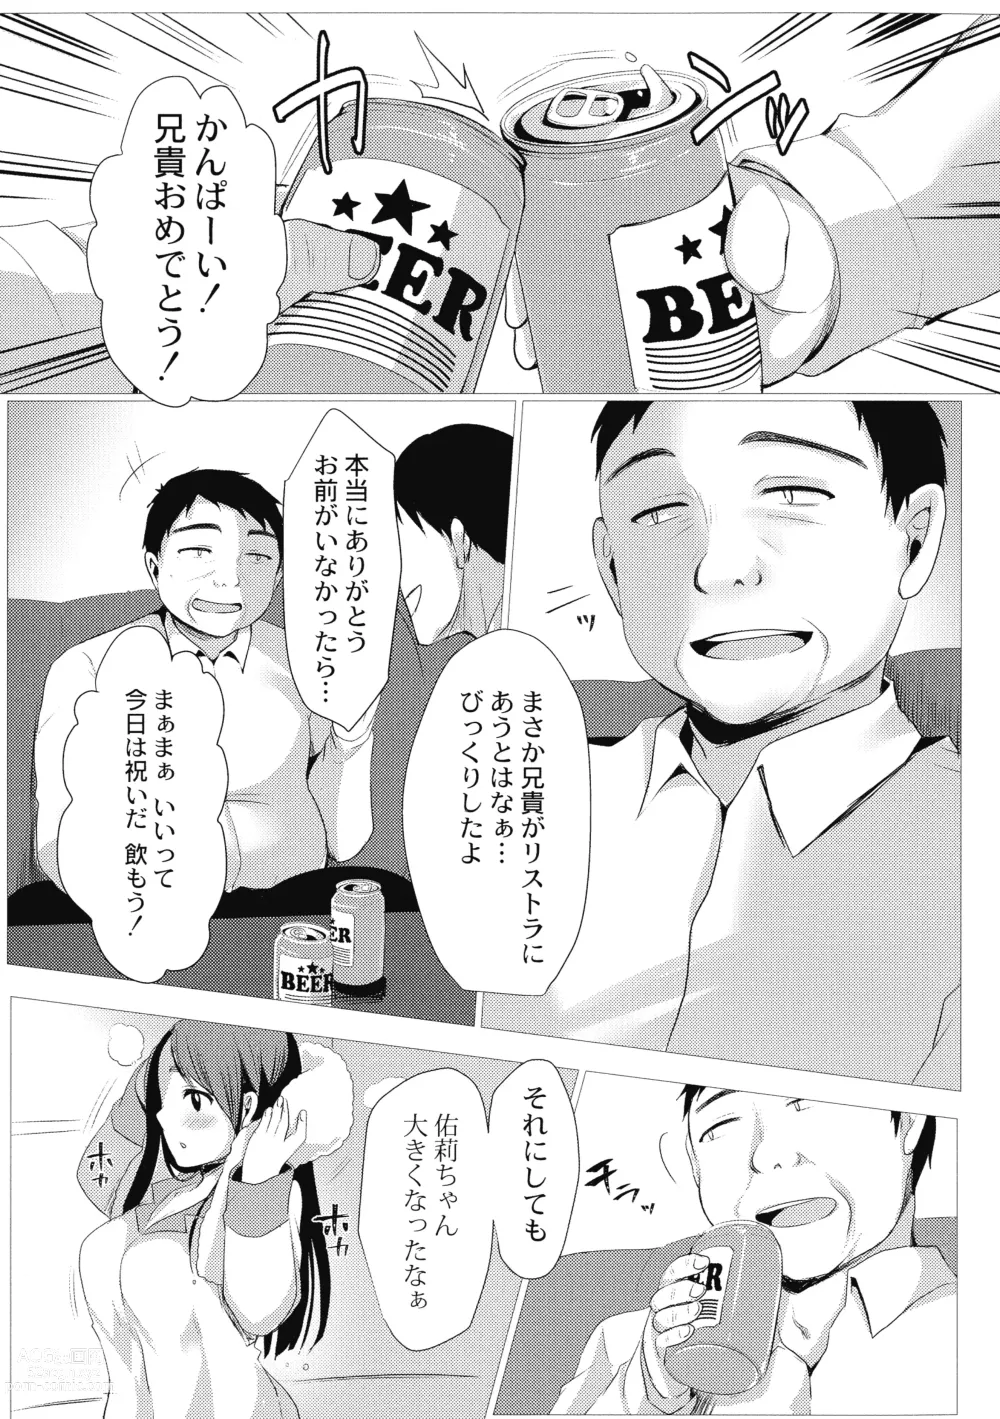 Page 7 of manga Mesuochi.